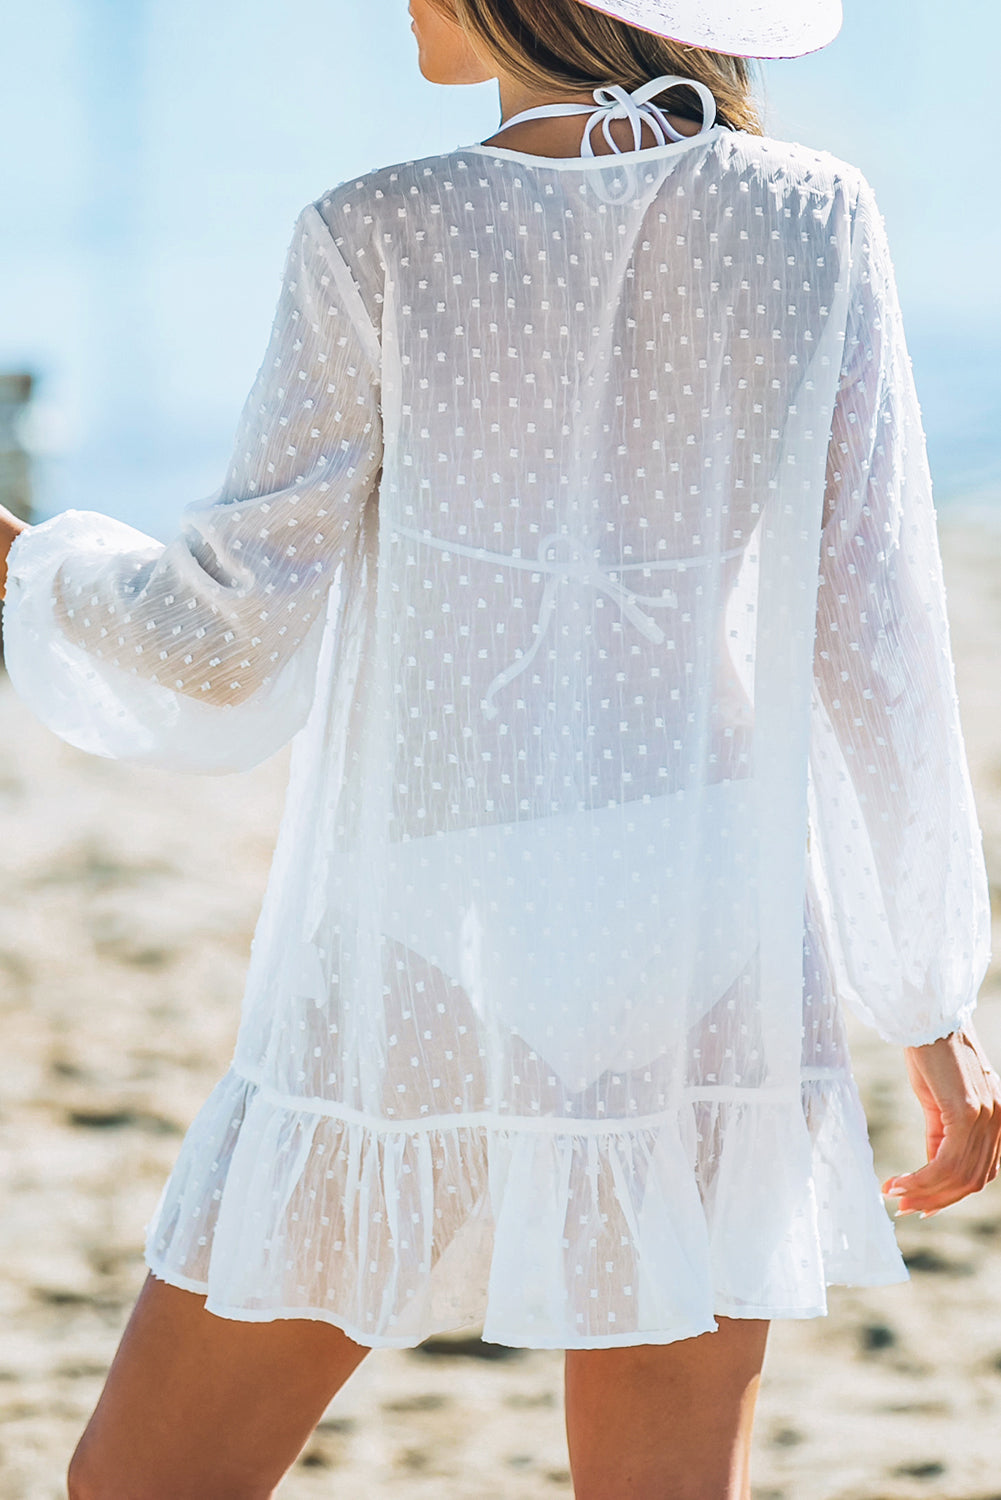 White Swiss Dot Crochet Long Sleeve Beach Cover Up